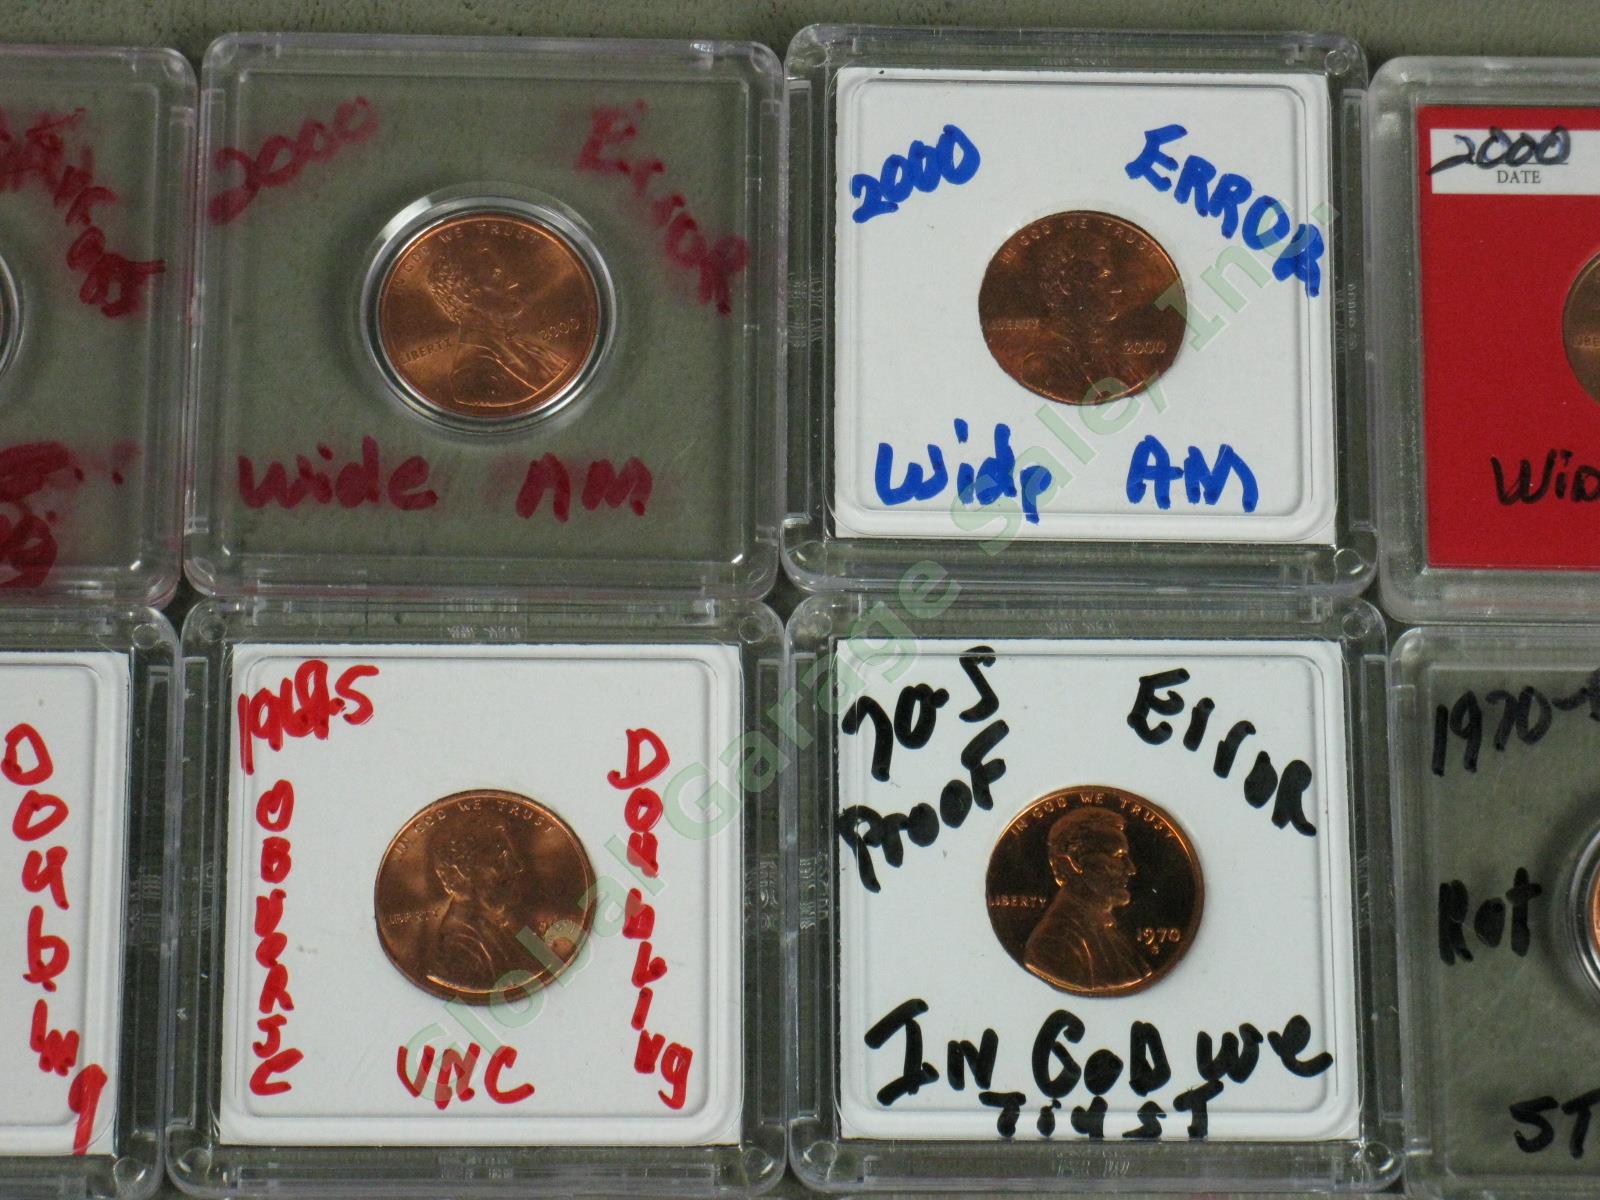 36 US Penny Mint Error Lot 12 UNC 1907 1917 1969-S ++ Doubles Die Cracks Wide AM 8